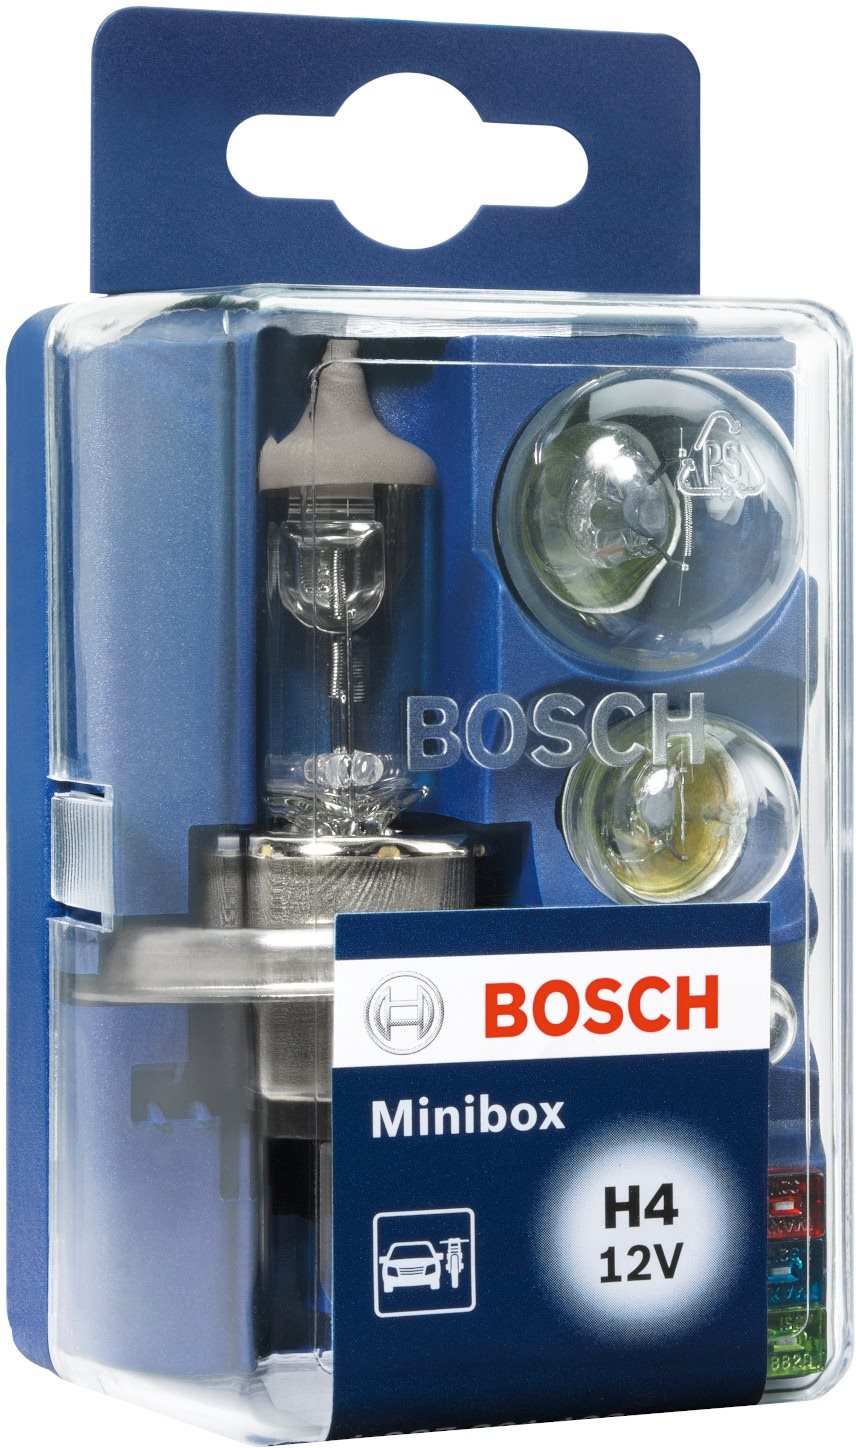 Bosch Minibox H4